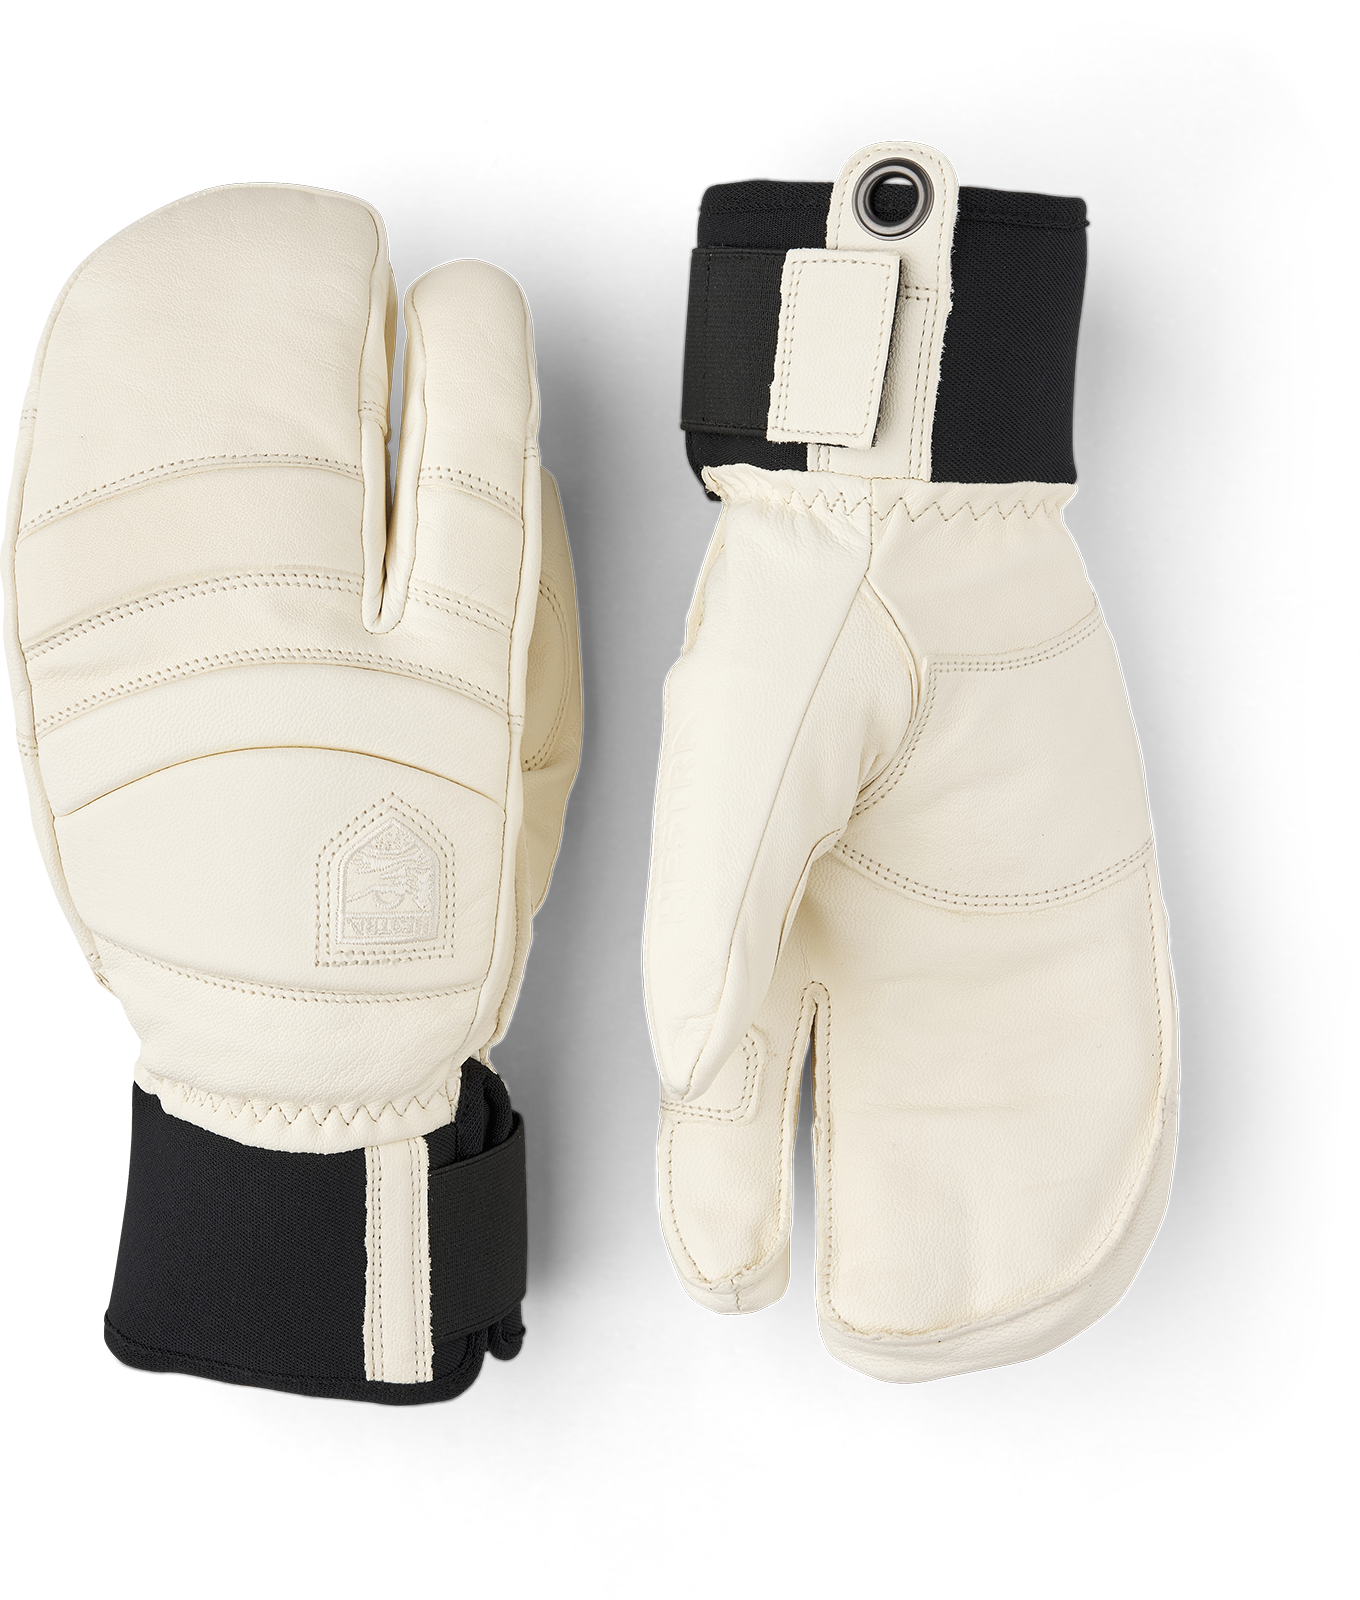 Fall Line 3-finger - Almond White/Almond White | Hestra Gloves